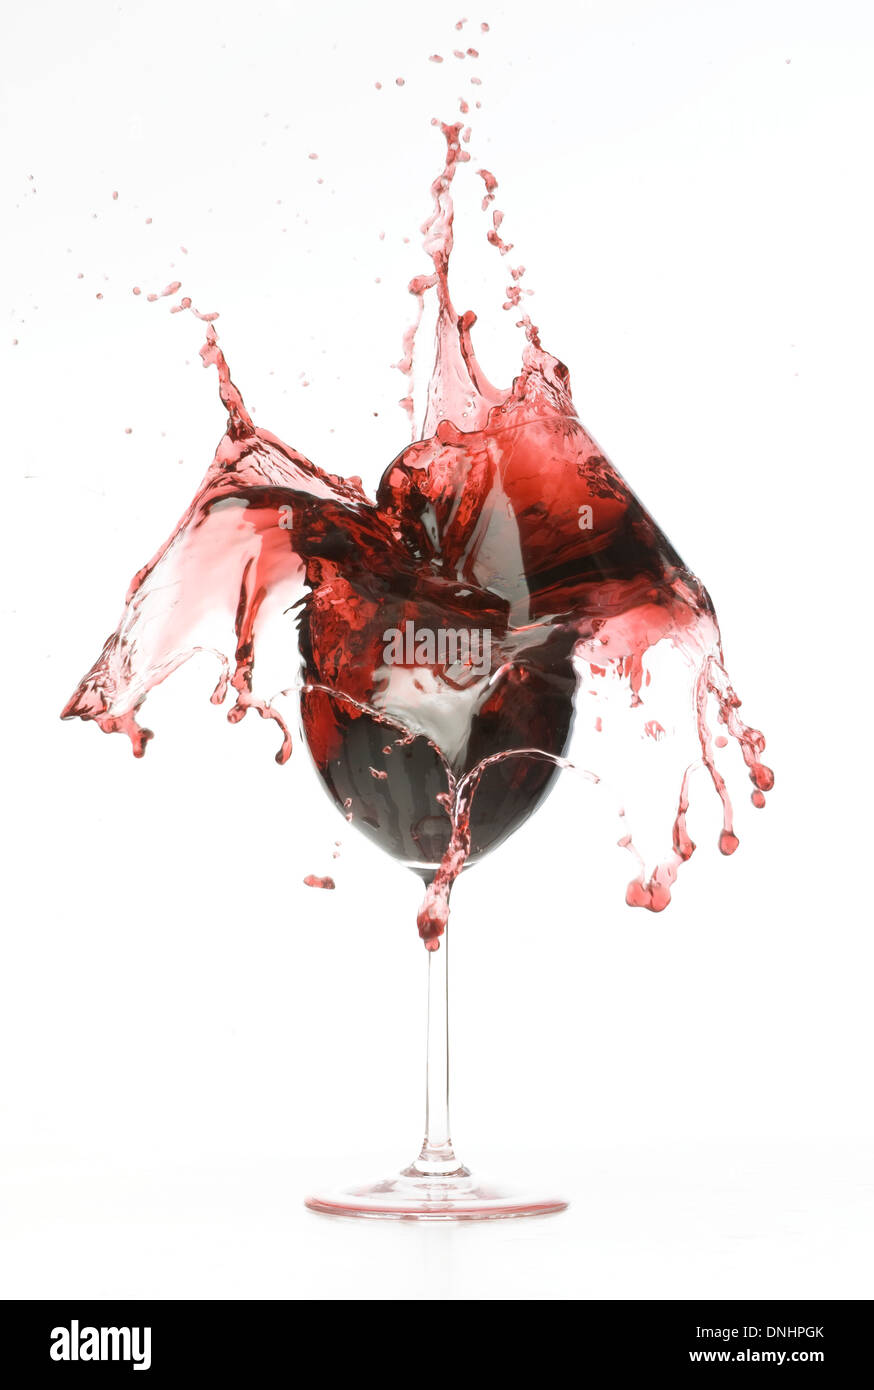 Un éclaboussement et bris de verre de vin rouge. Banque D'Images